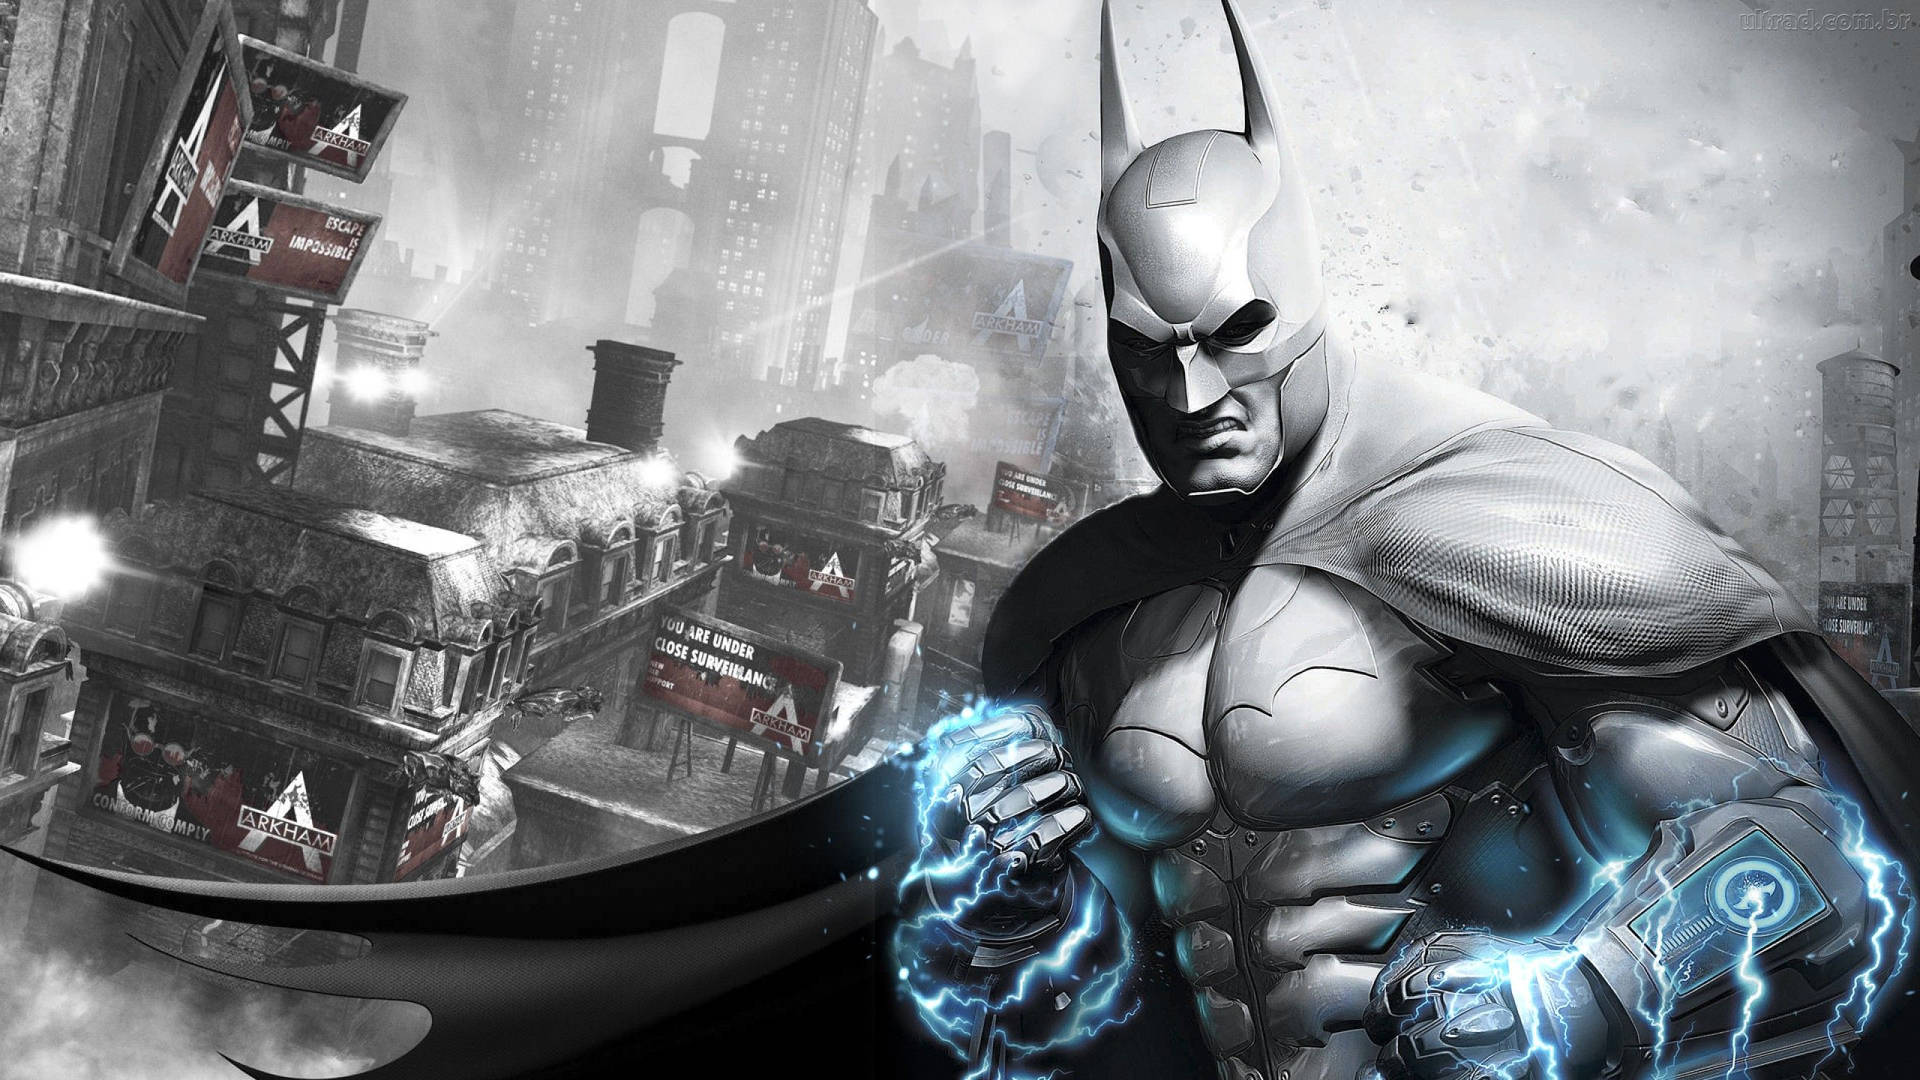 Preparandosiper La Sua Prossima Battaglia, Batman Si Erge In Cima Ad Un Grattacielo Imponente A Una Risoluzione Di 2560x1440. Sfondo